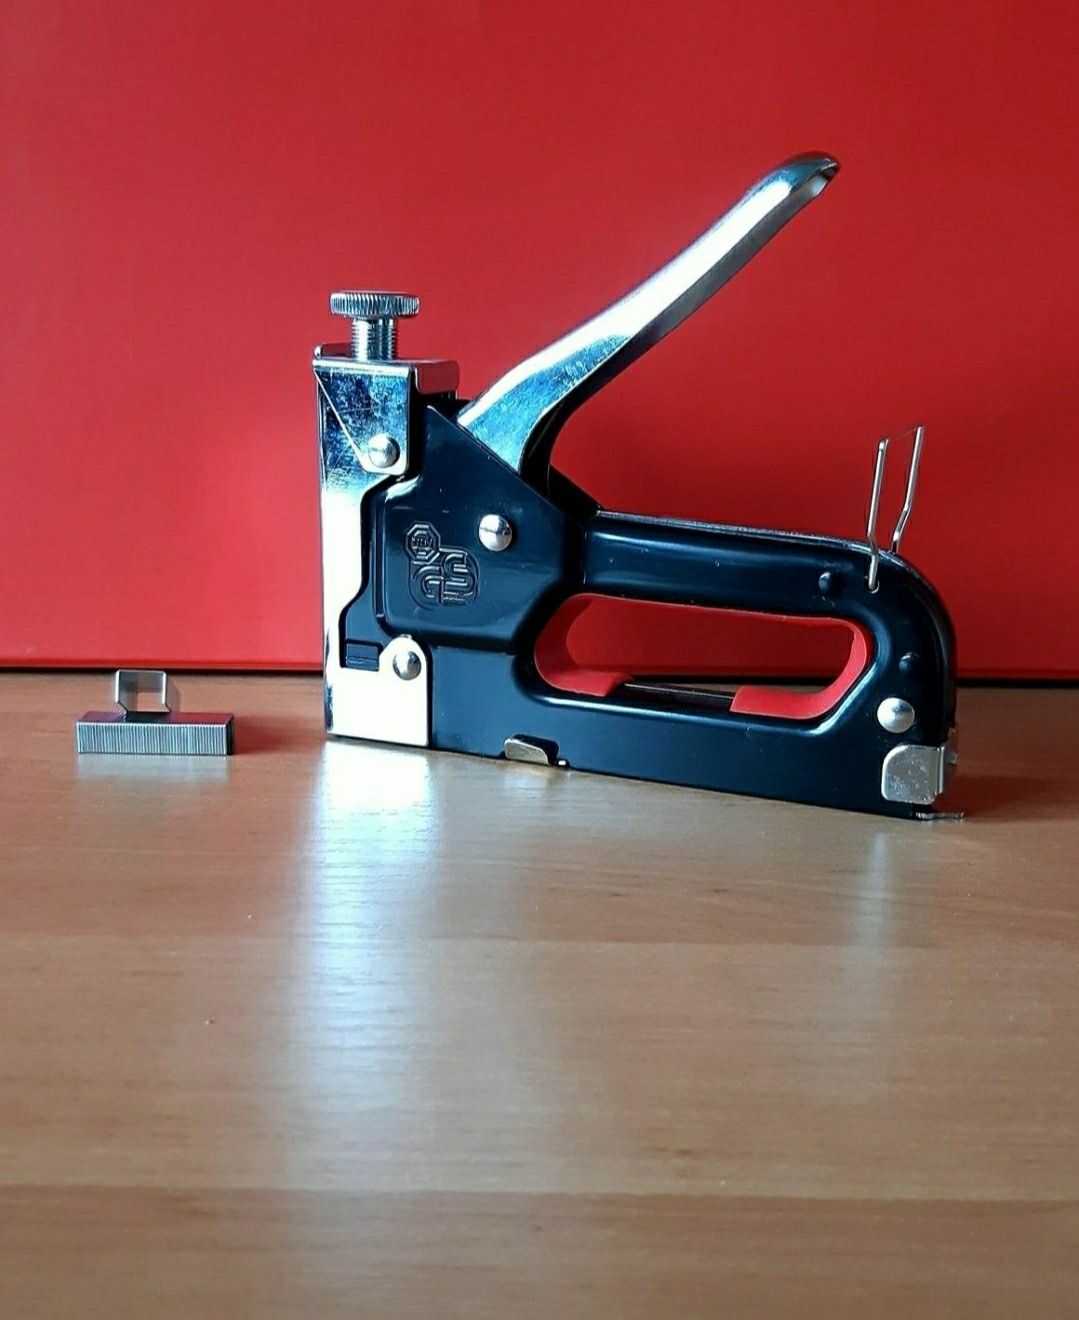 Степлер монтажный со скобами мебель инструмент рабочий ремонт крепеж